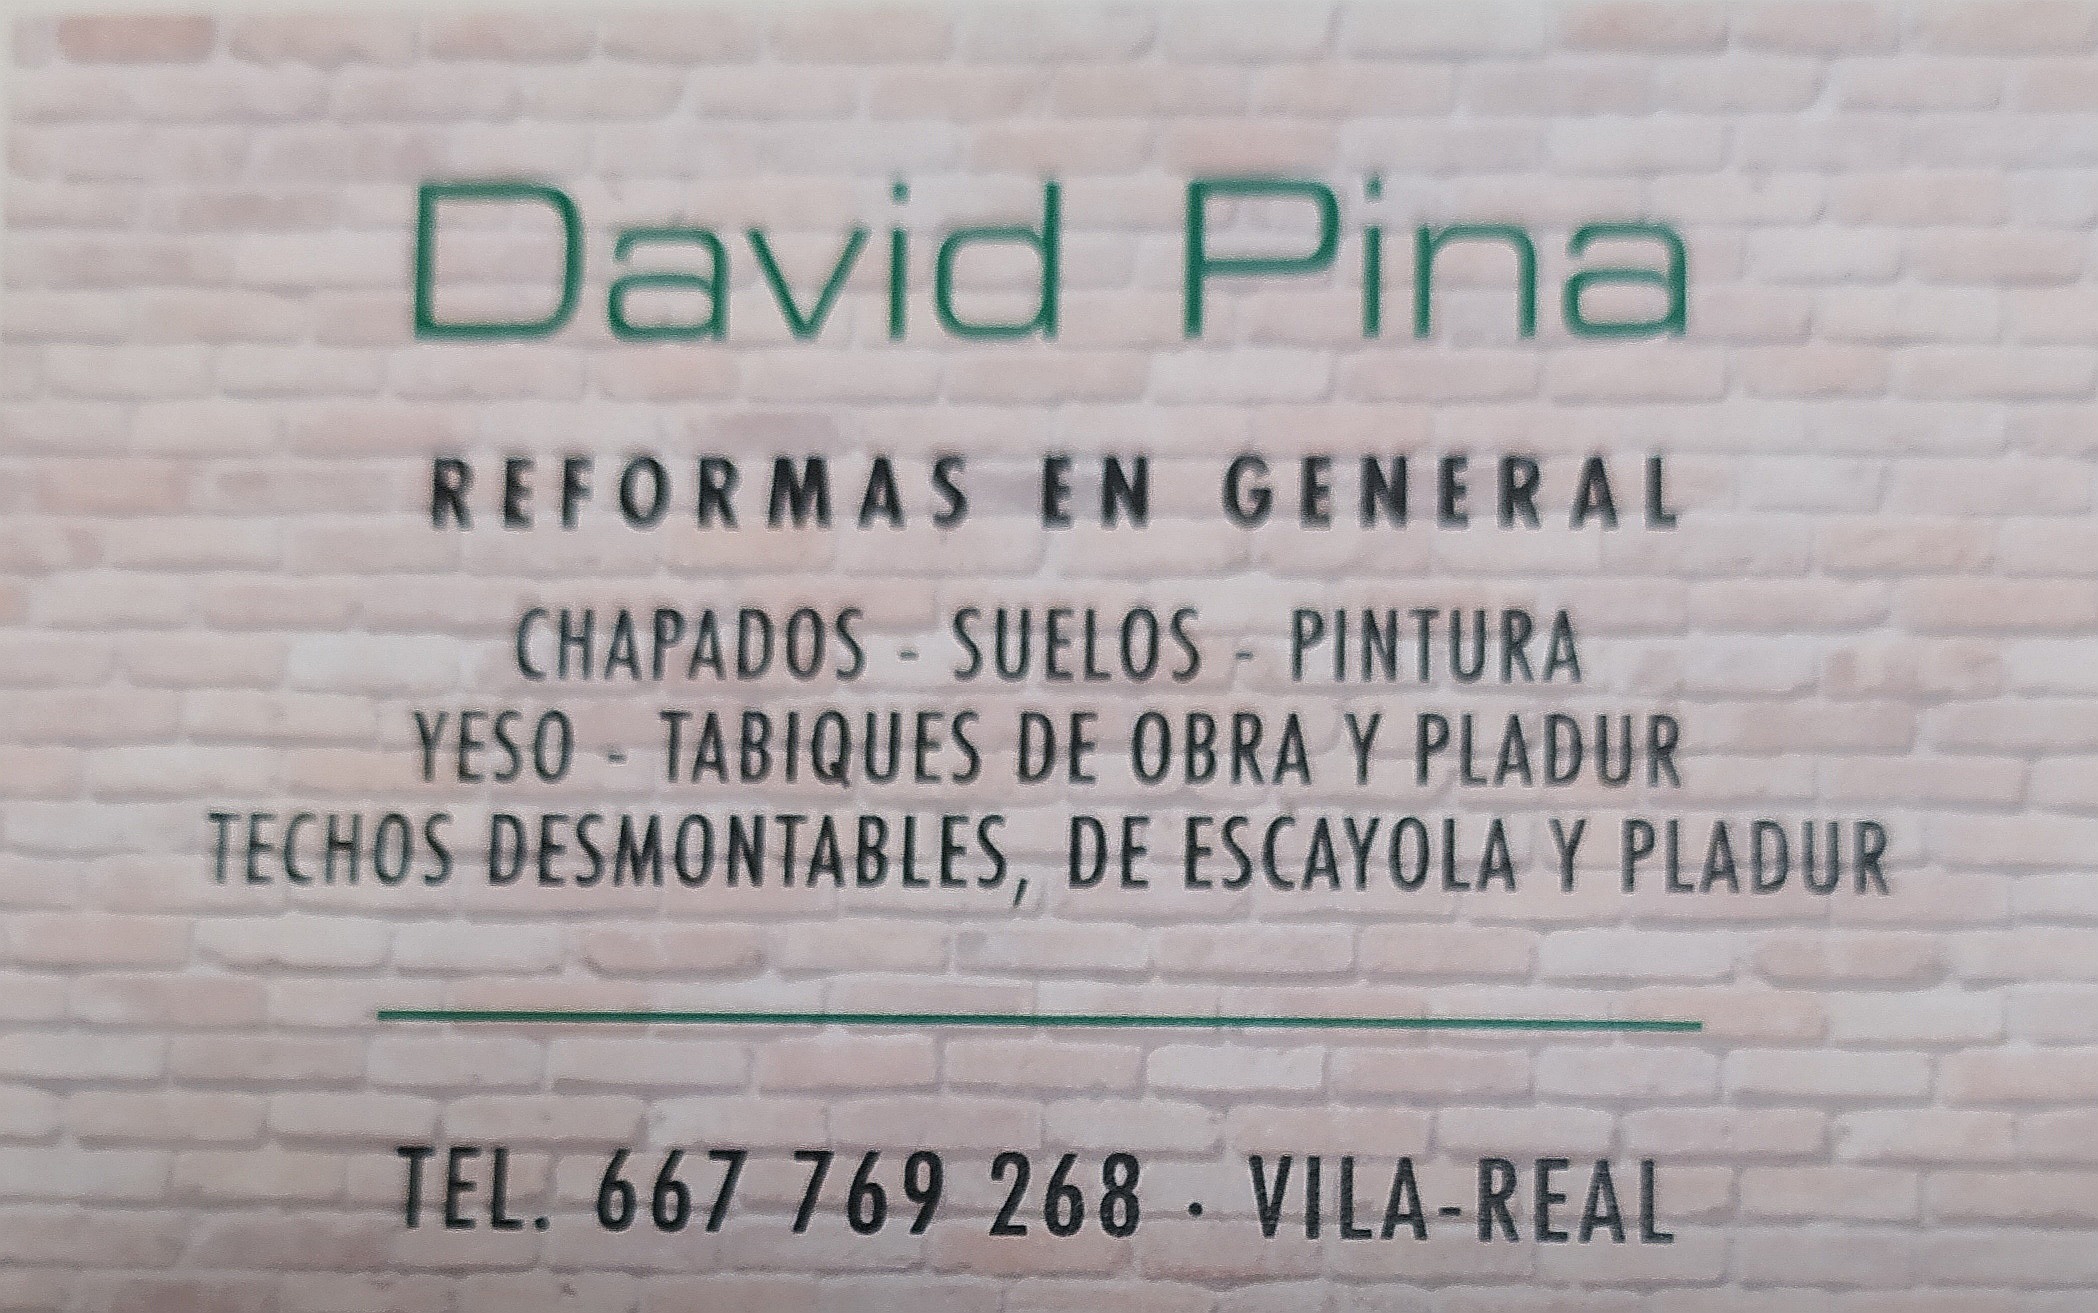 David Pina

REFORMAS EN GENERAL

(HAPADOS - SUELOS - PINTURA
YESO - TABIQUES DE OBRA Y PLADUR
TECHOS DESMONTABLES, DE ESCAYOLA Y PLADUR

 

sali